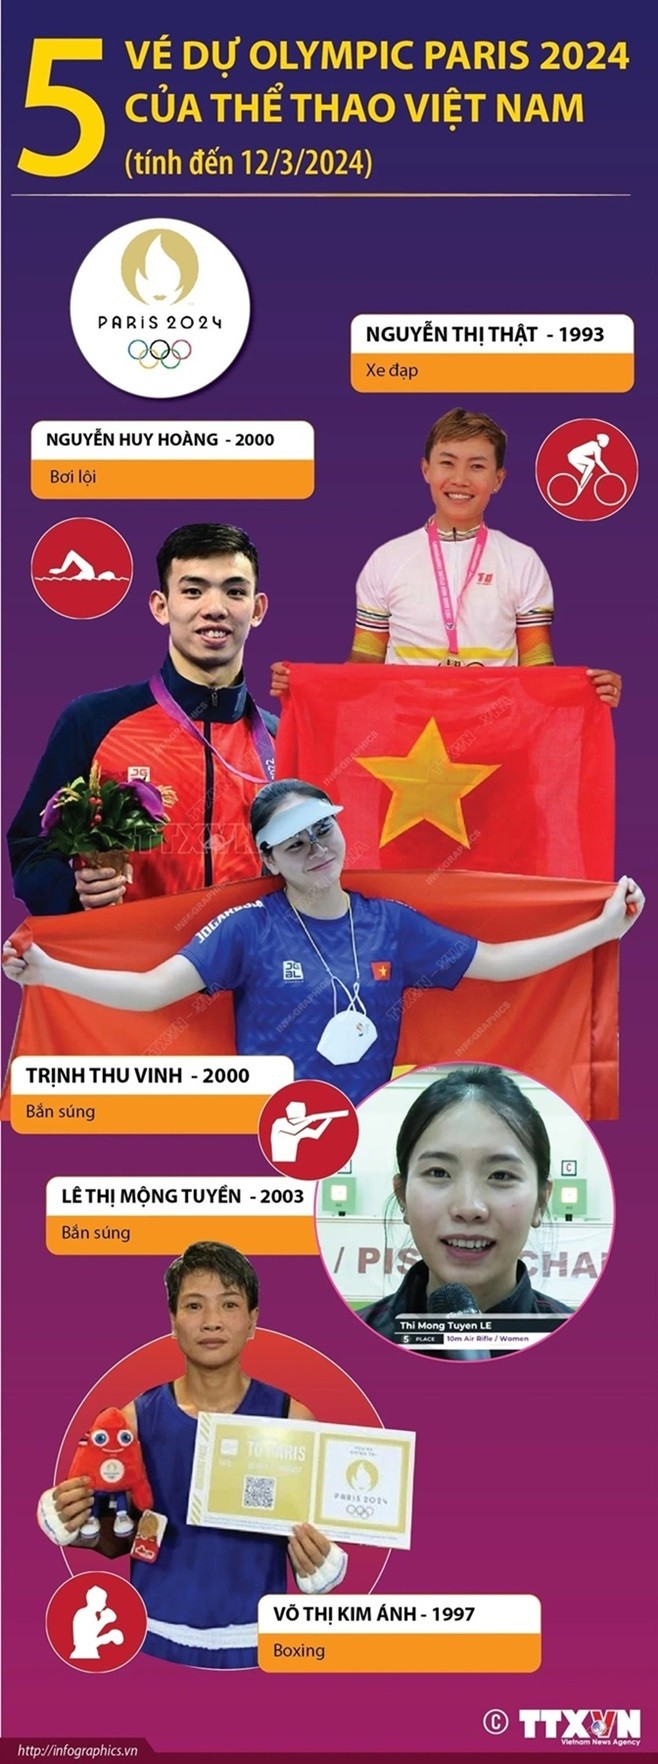 Năm VĐV Việt Nam dự Olympic Paris 2024.